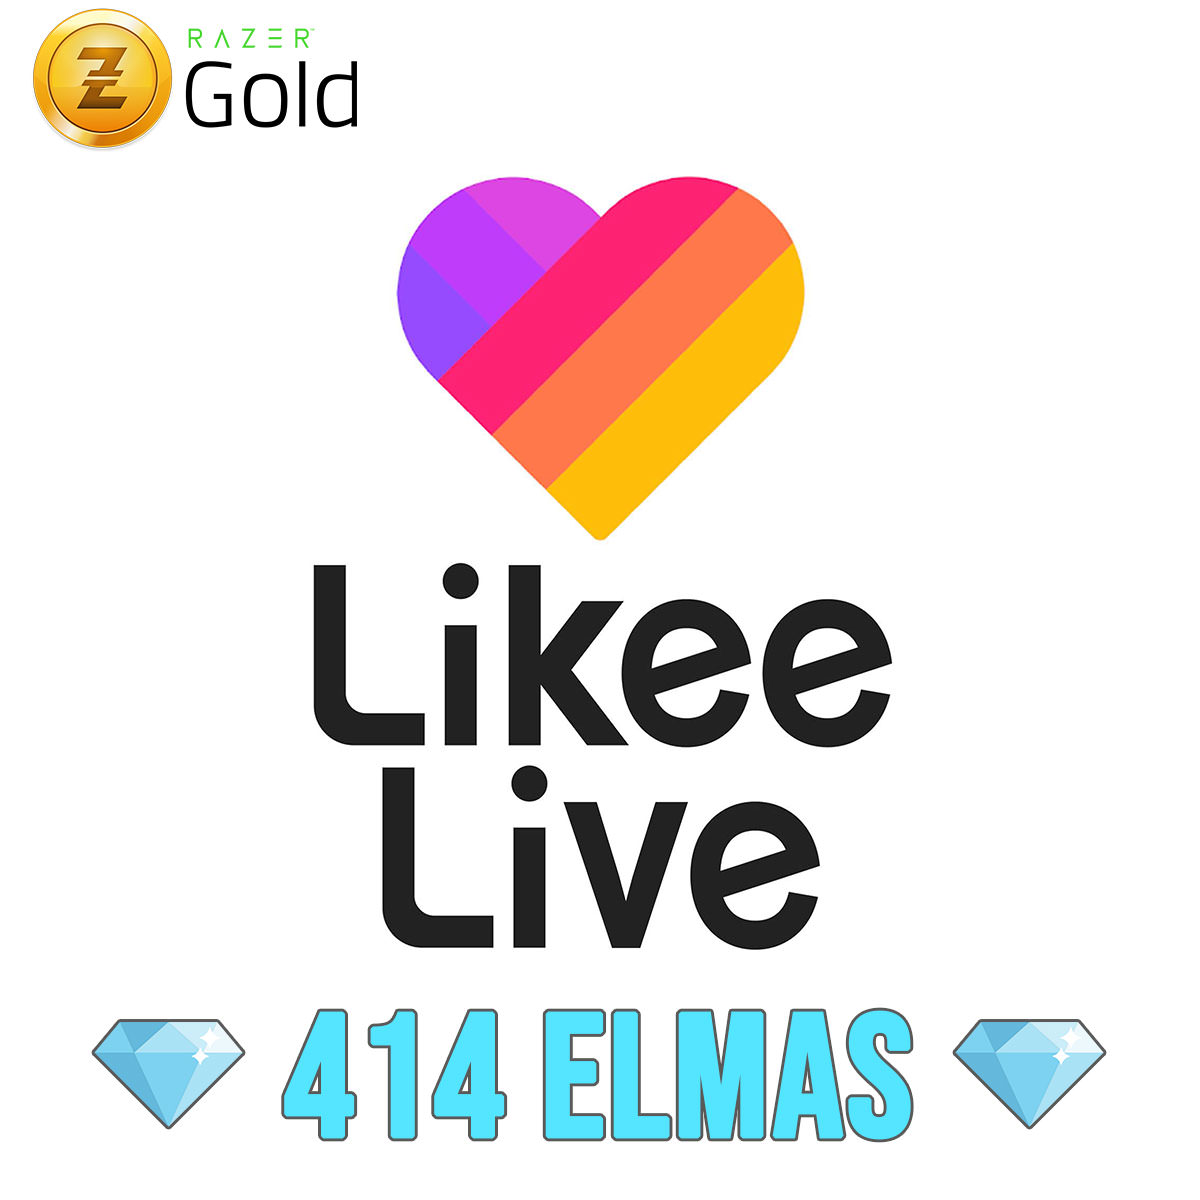 Likee Live 414 Elmas